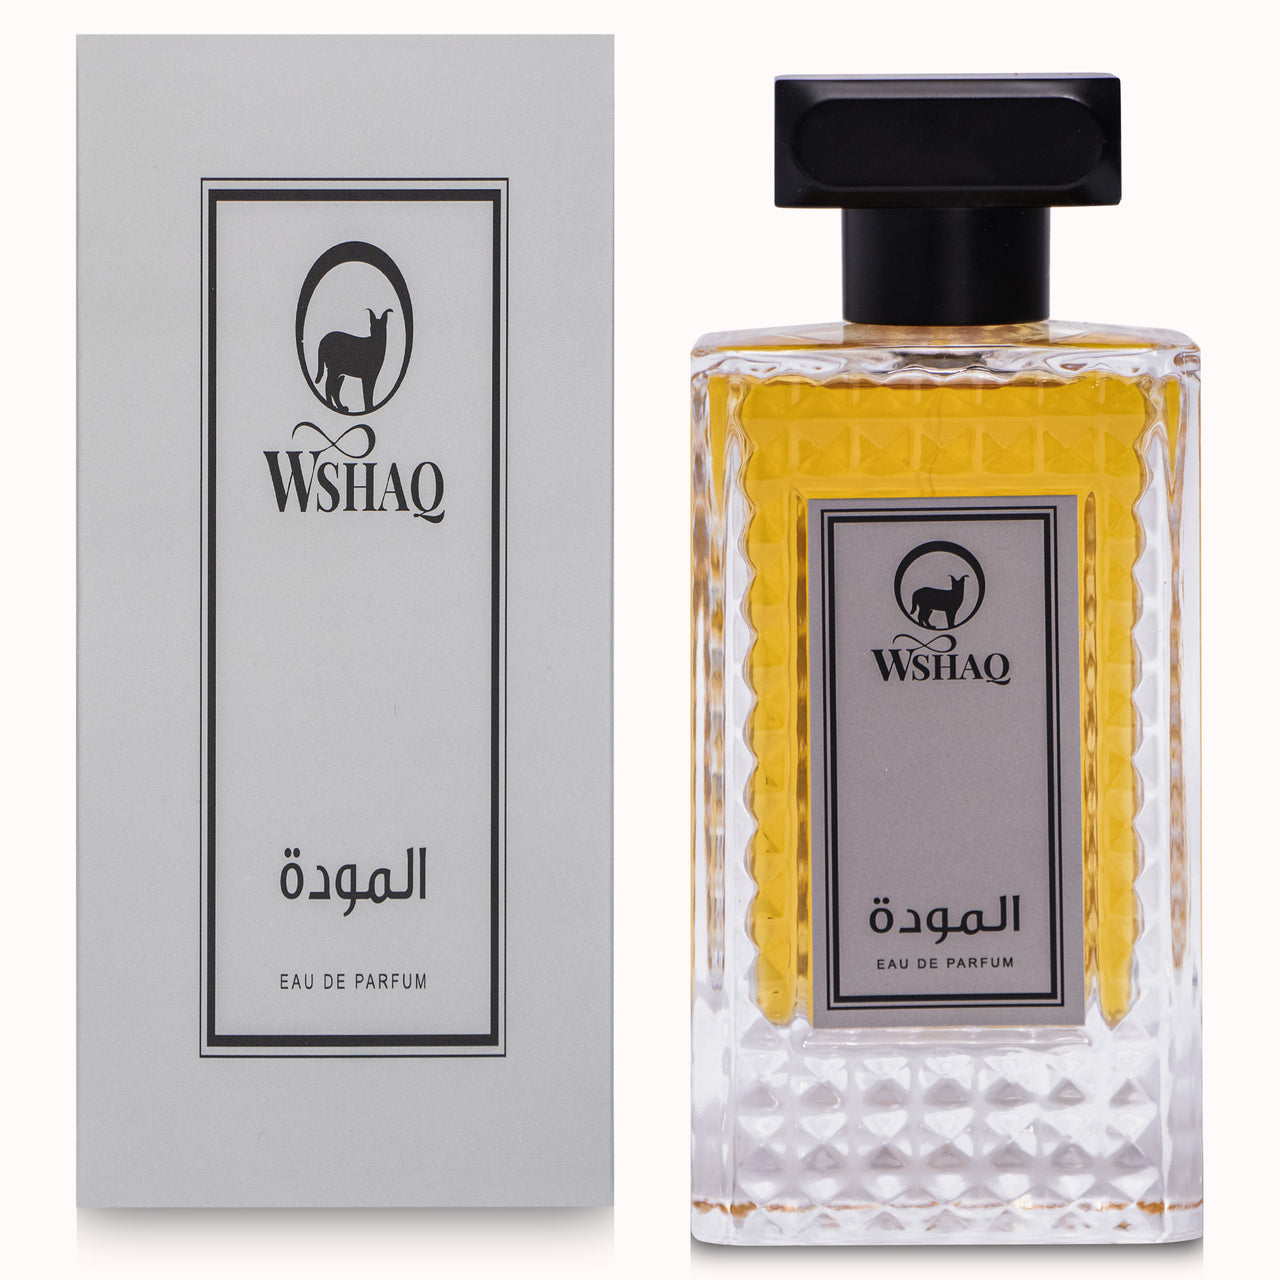 Al-Mawdah Perfume